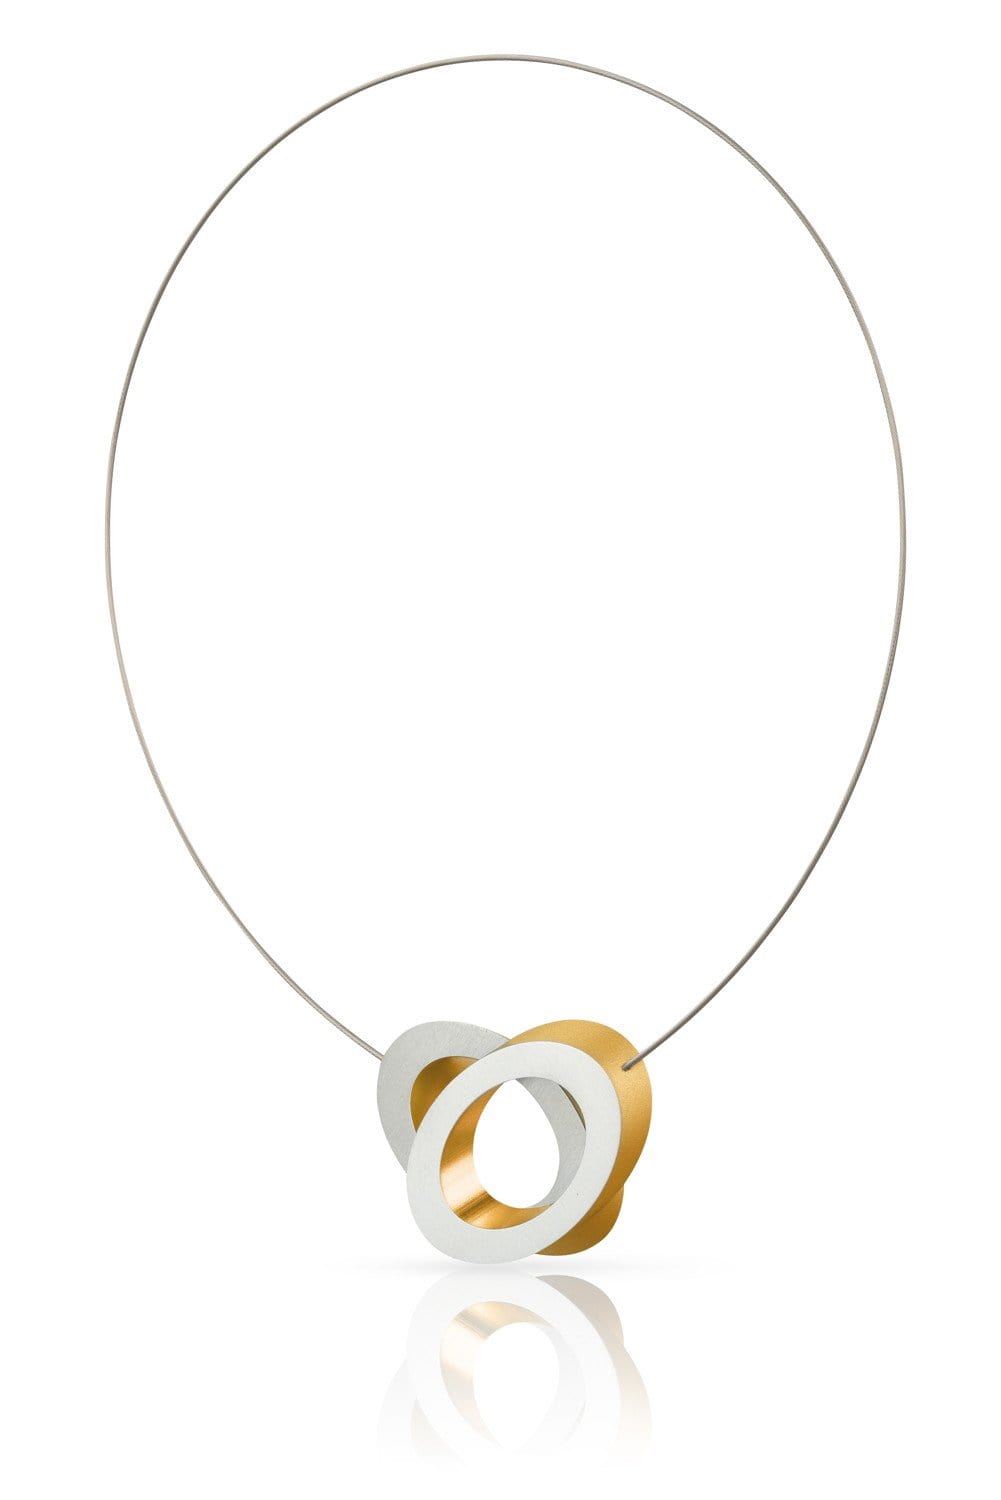 Halskette Ovale übereinander C70 Gold/Gelb